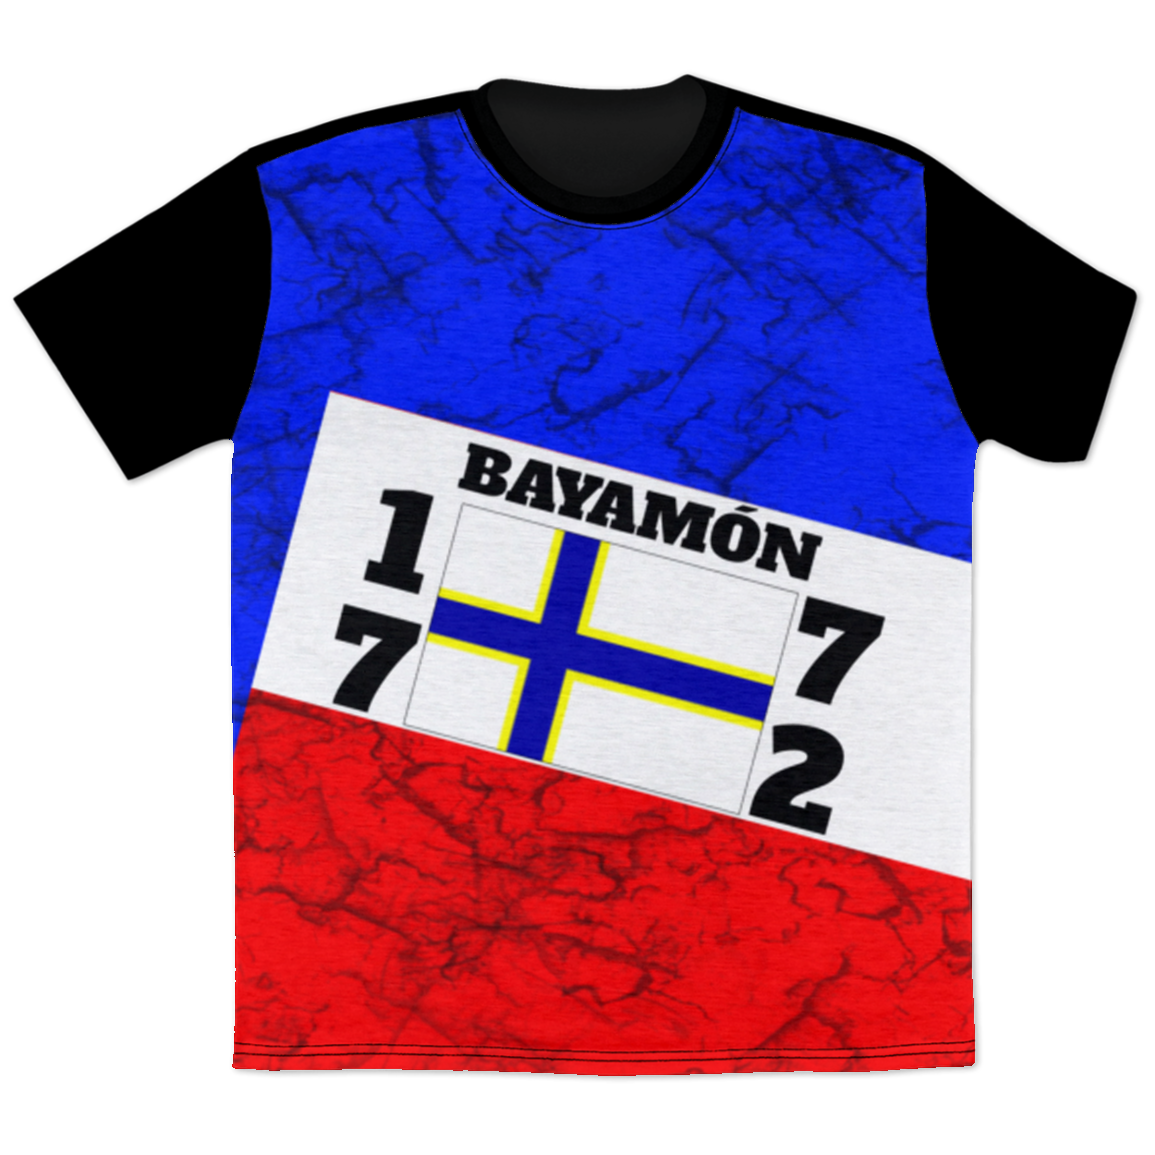 BAYAMON T-Shirt - Puerto Rican Pride